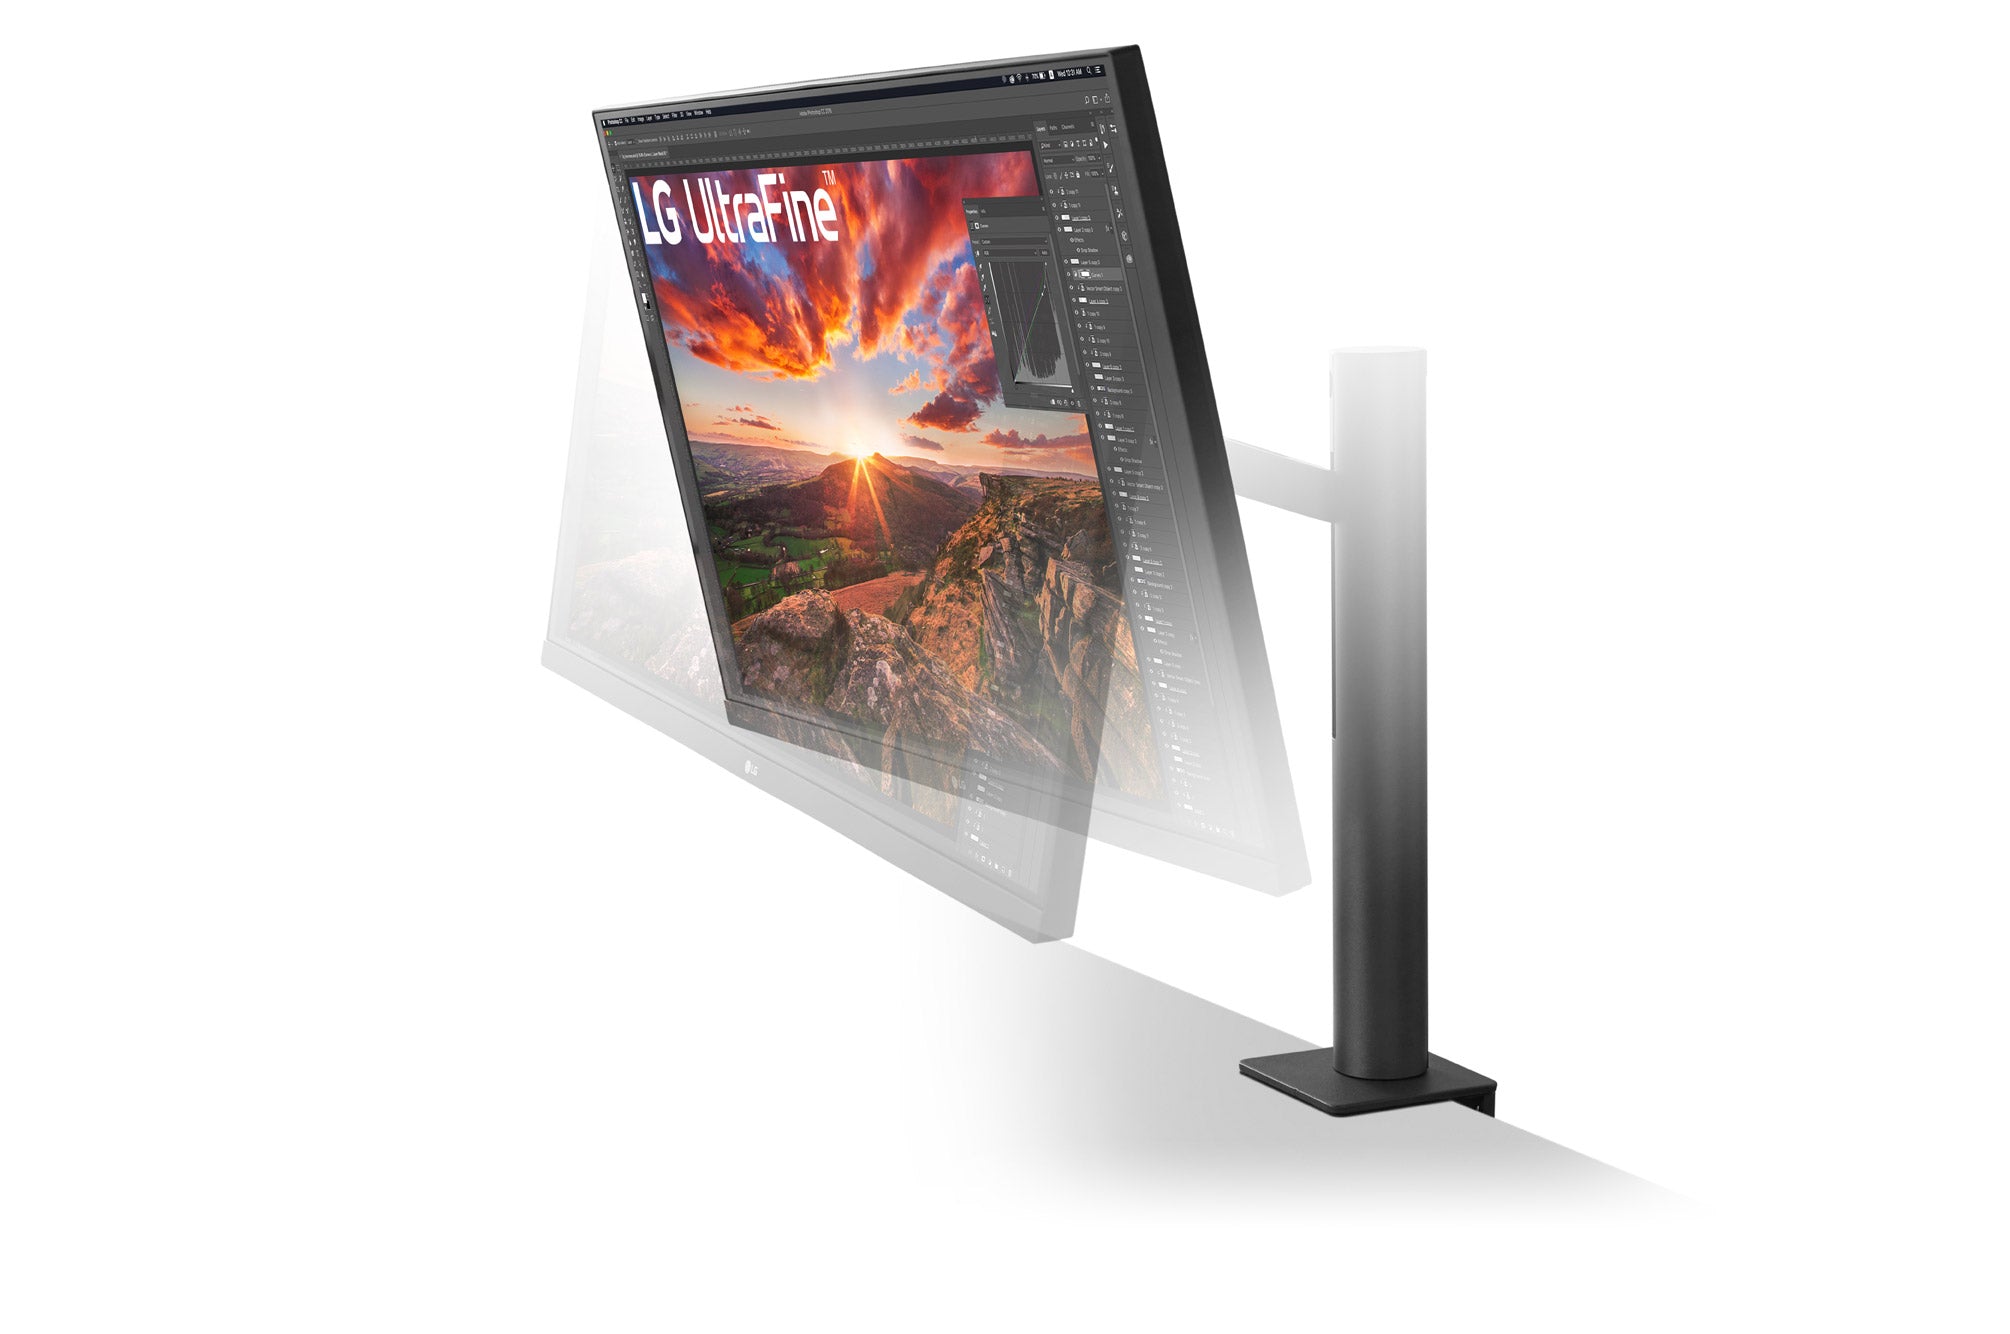 LG 27UN880 UltraHD Monitor / 27 inch / 3840 x 2160 Resolution / AMD FreeSync / Dynamic Action Sync / Black Stabilizer